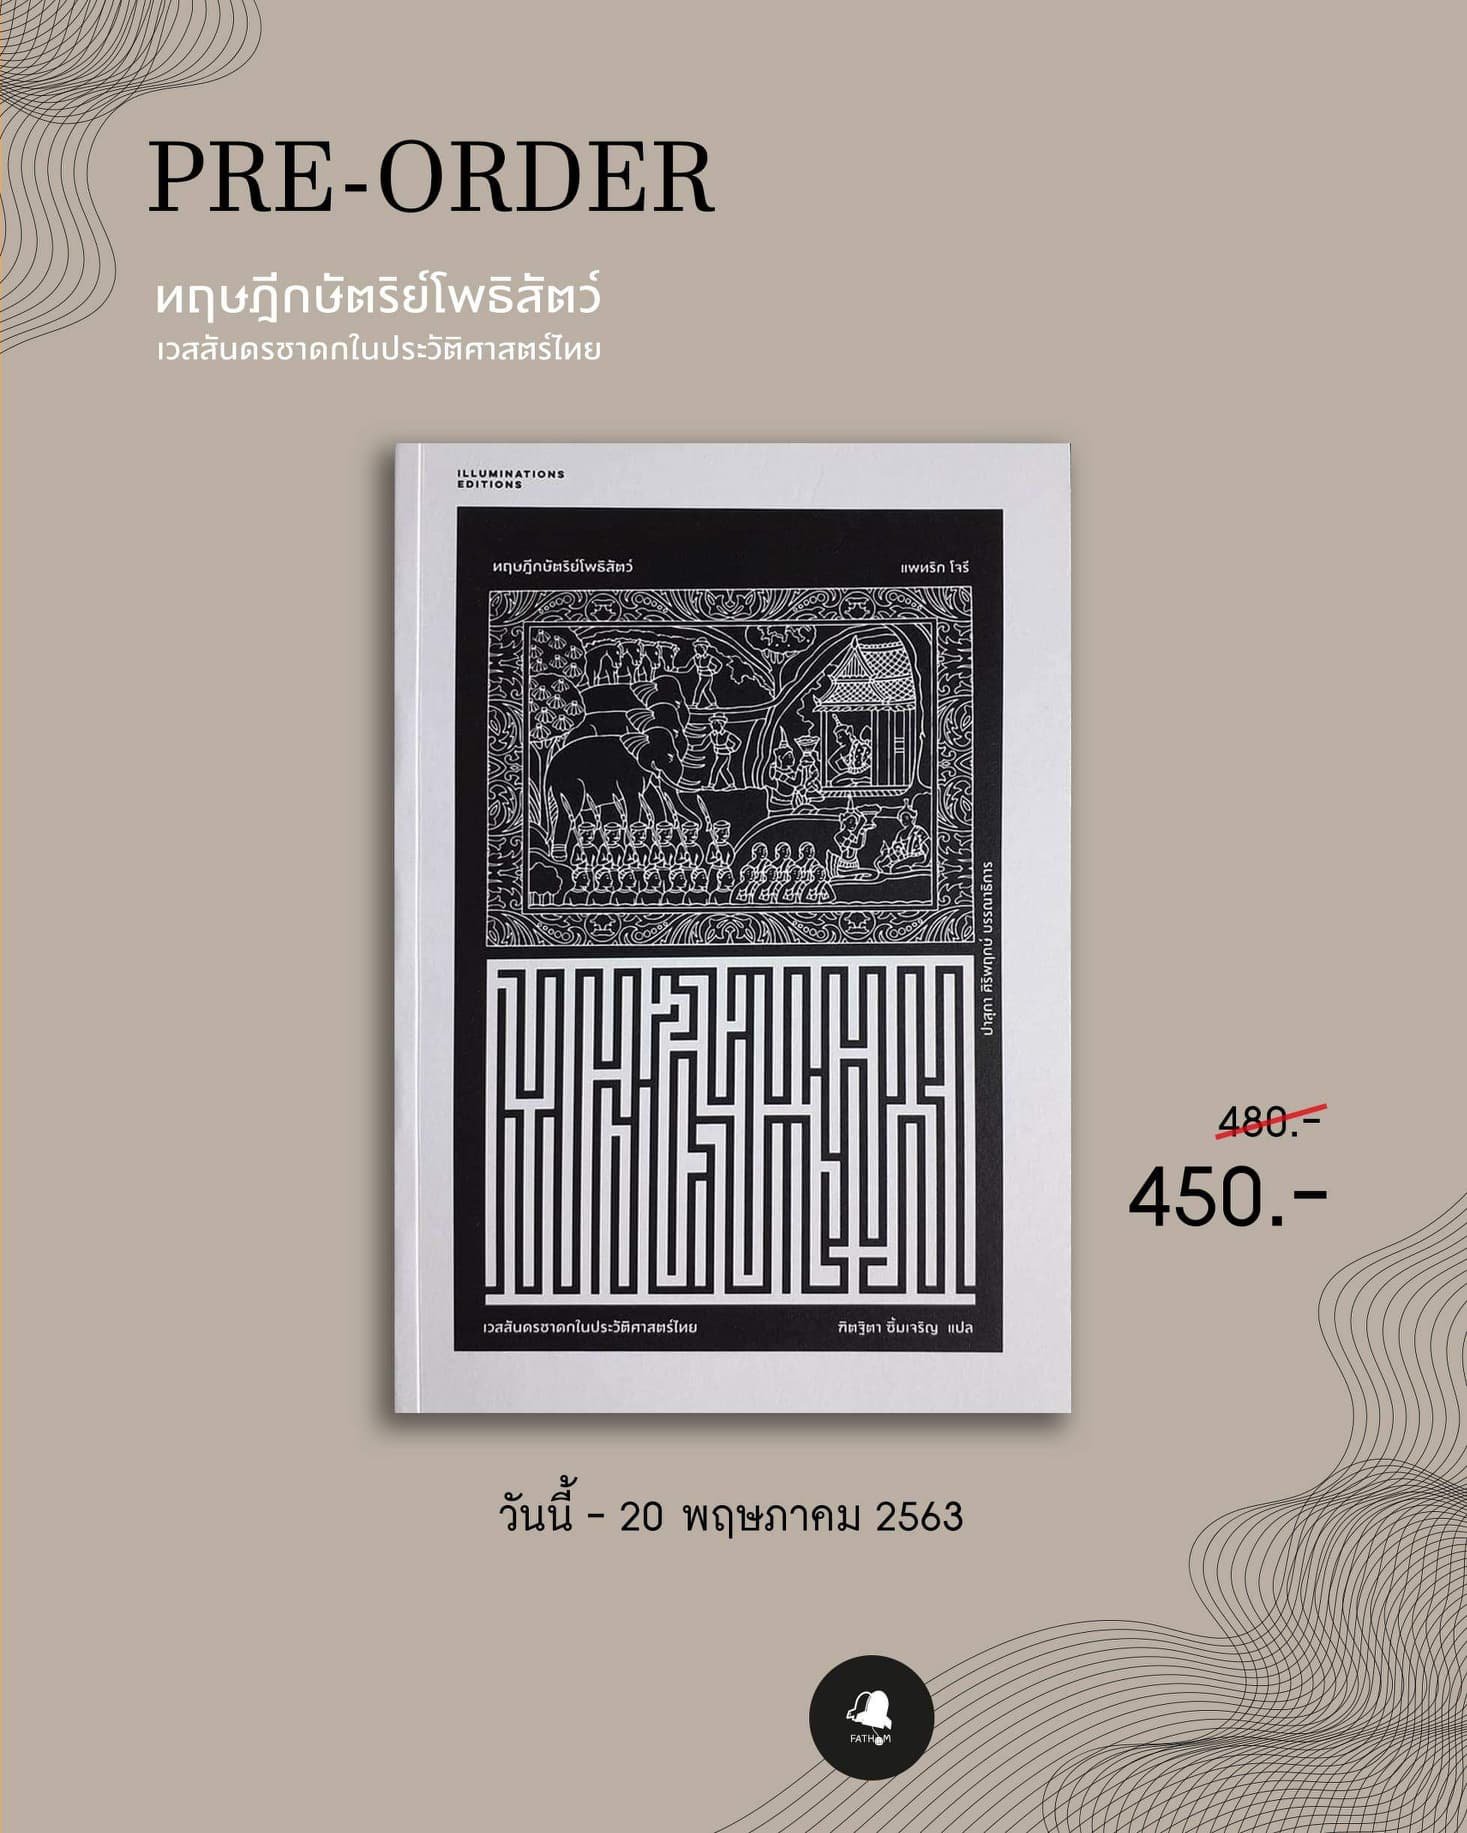 ทฤษฎีกษัตริย์โพธิสัตว์ เวสสันดรชาดกในประวัติศาสตร์ไทย / แพทริค โจรี / ILLUMINATIONS EDITION